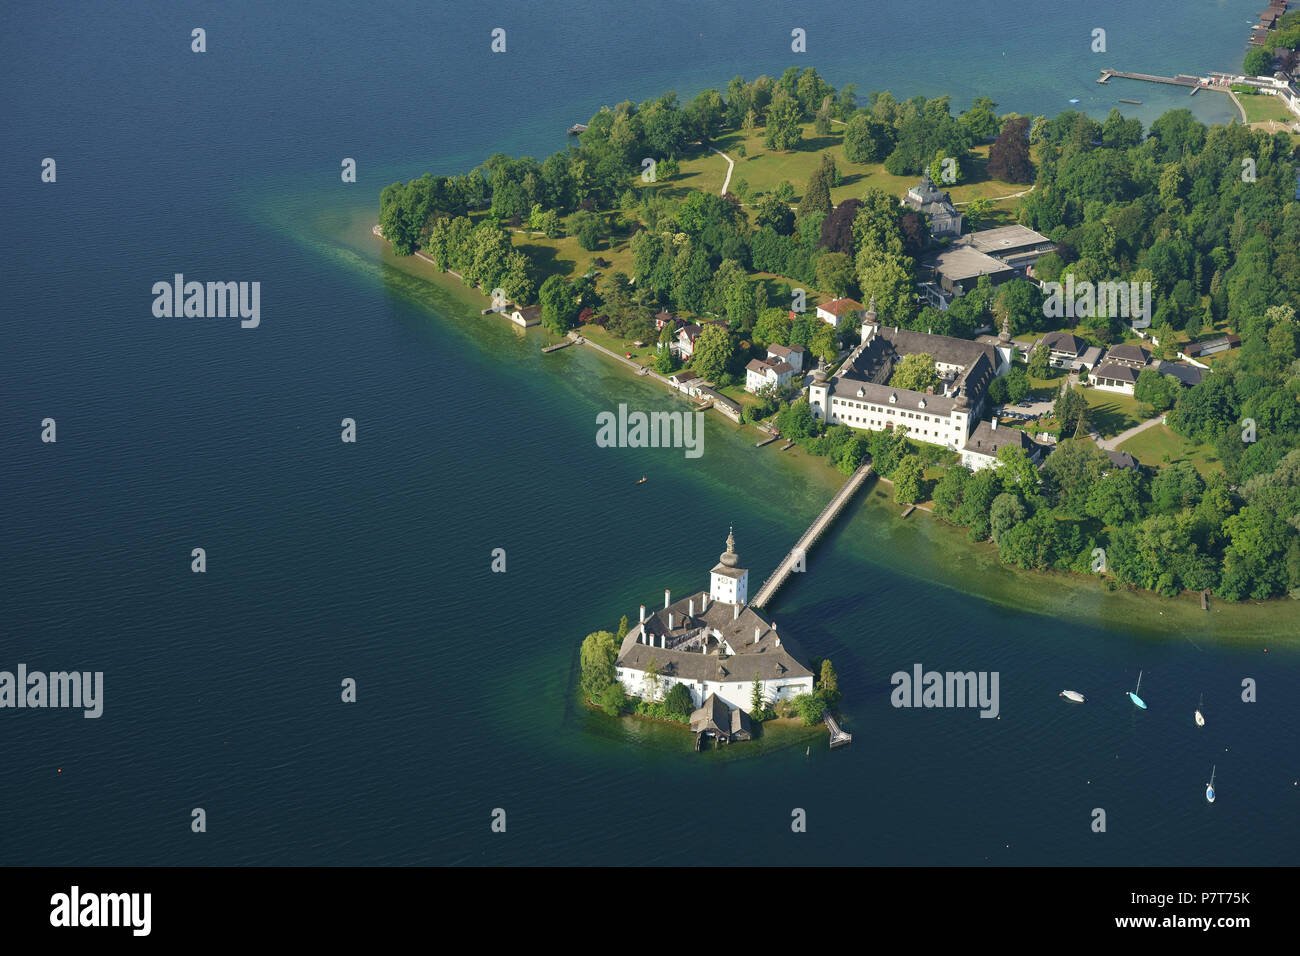 VUE AÉRIENNE. Château médiéval sur un lac avec une passerelle d'accès. Château de ORT, Gmunden, Traunsee (lac), haute-Autriche, Autriche. Banque D'Images